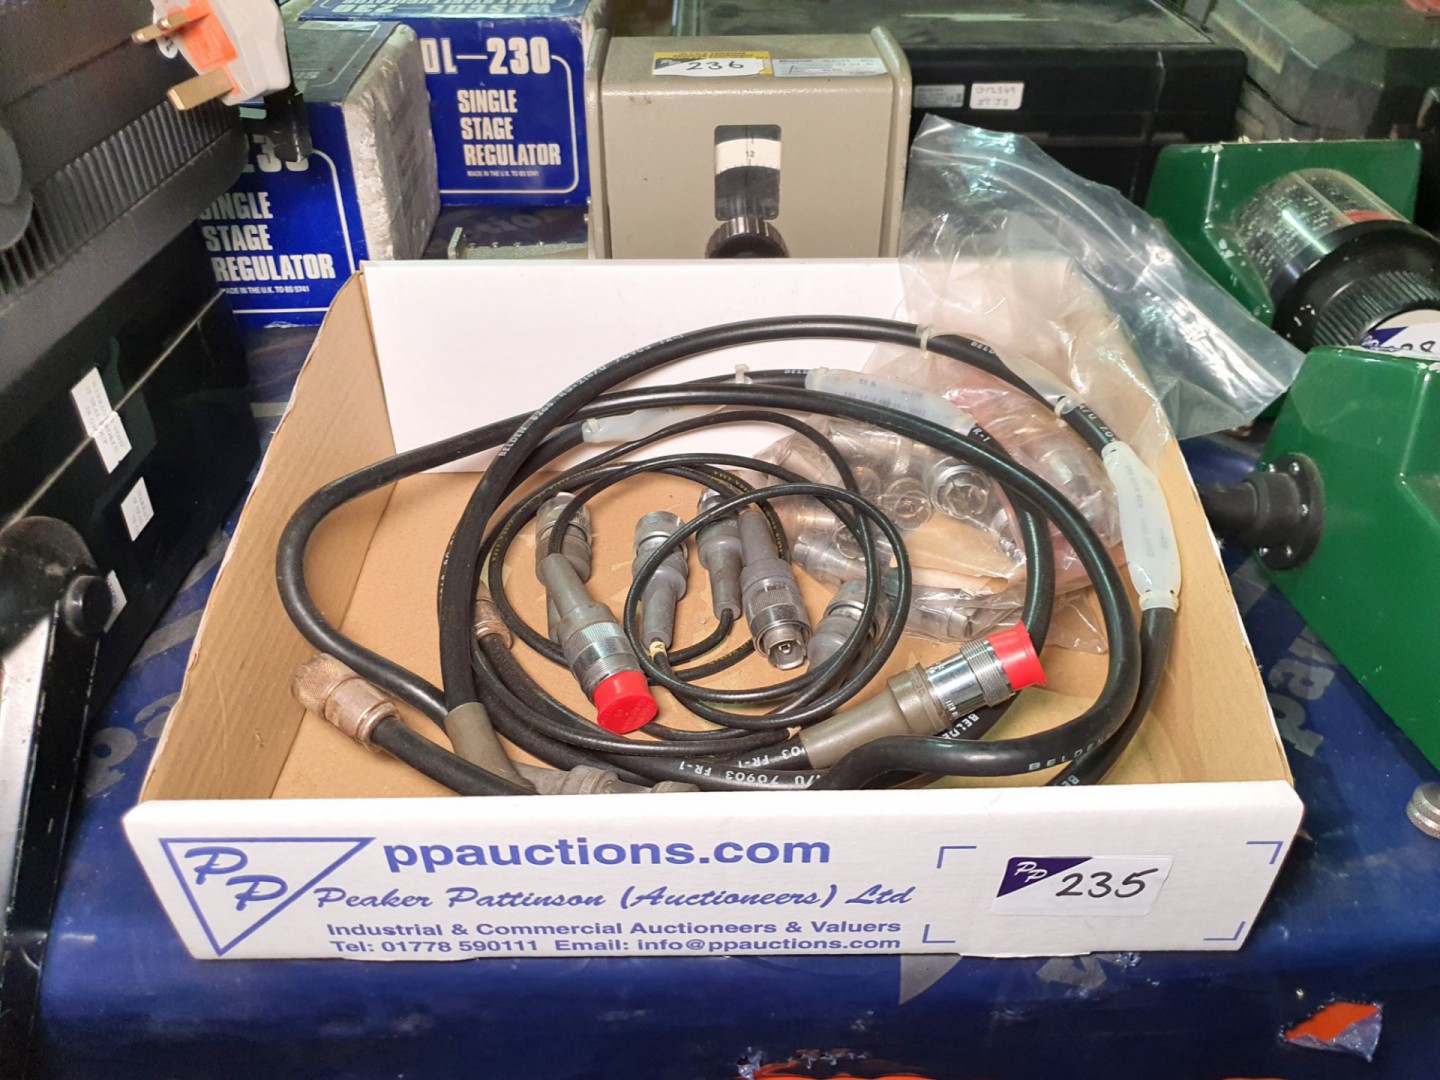 Box of General Radio GR connectors/adaptors/cables...